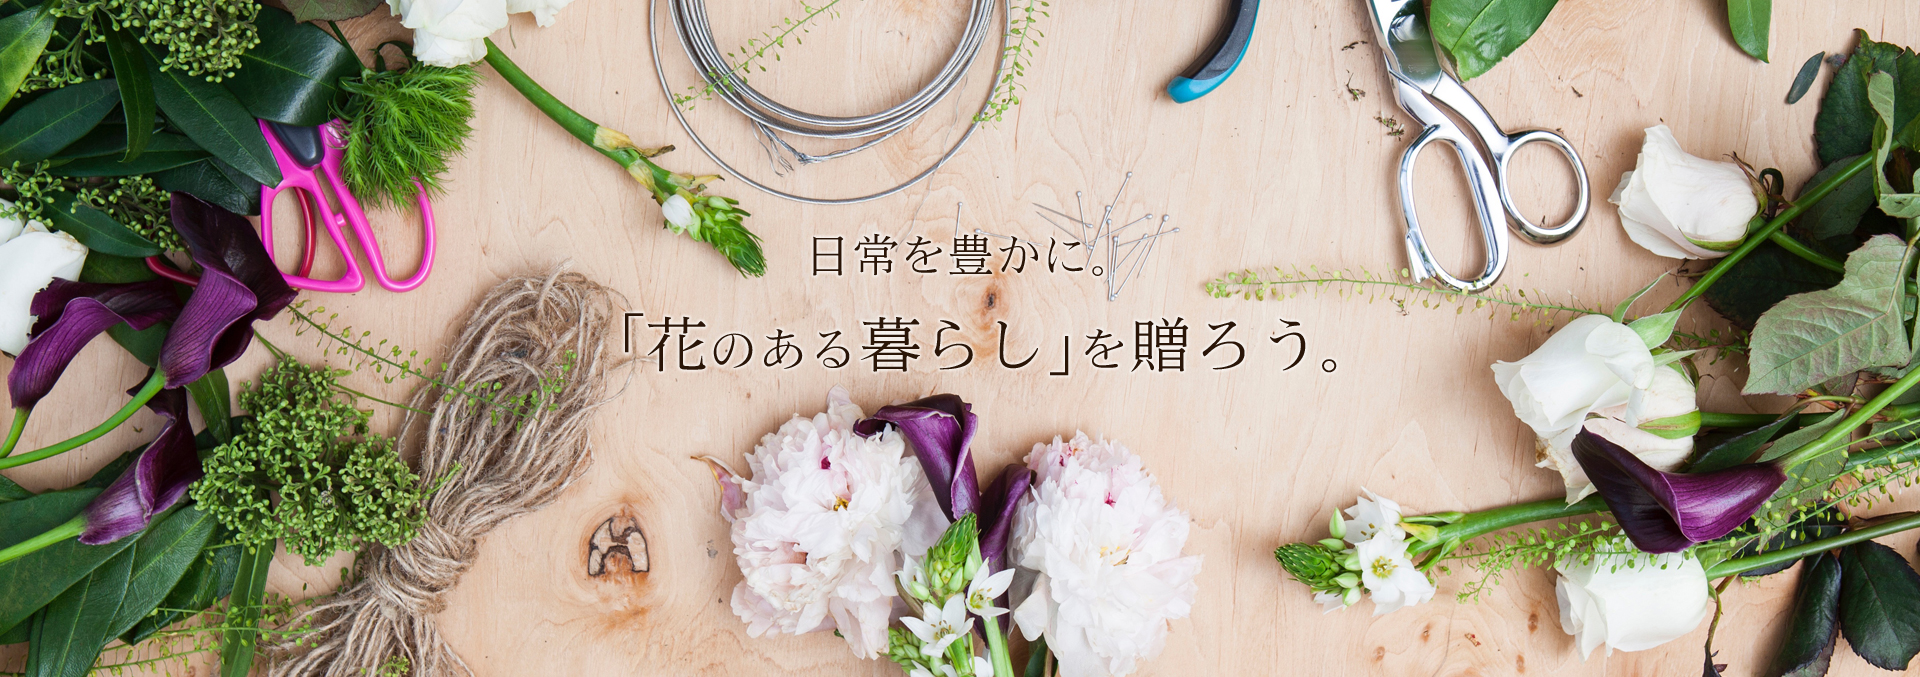 TOP画像 |祝い花、ブライダル、仏花などでお花をお探しなら静岡県富士市の花屋で造花専門店のフラワープラザ花時計